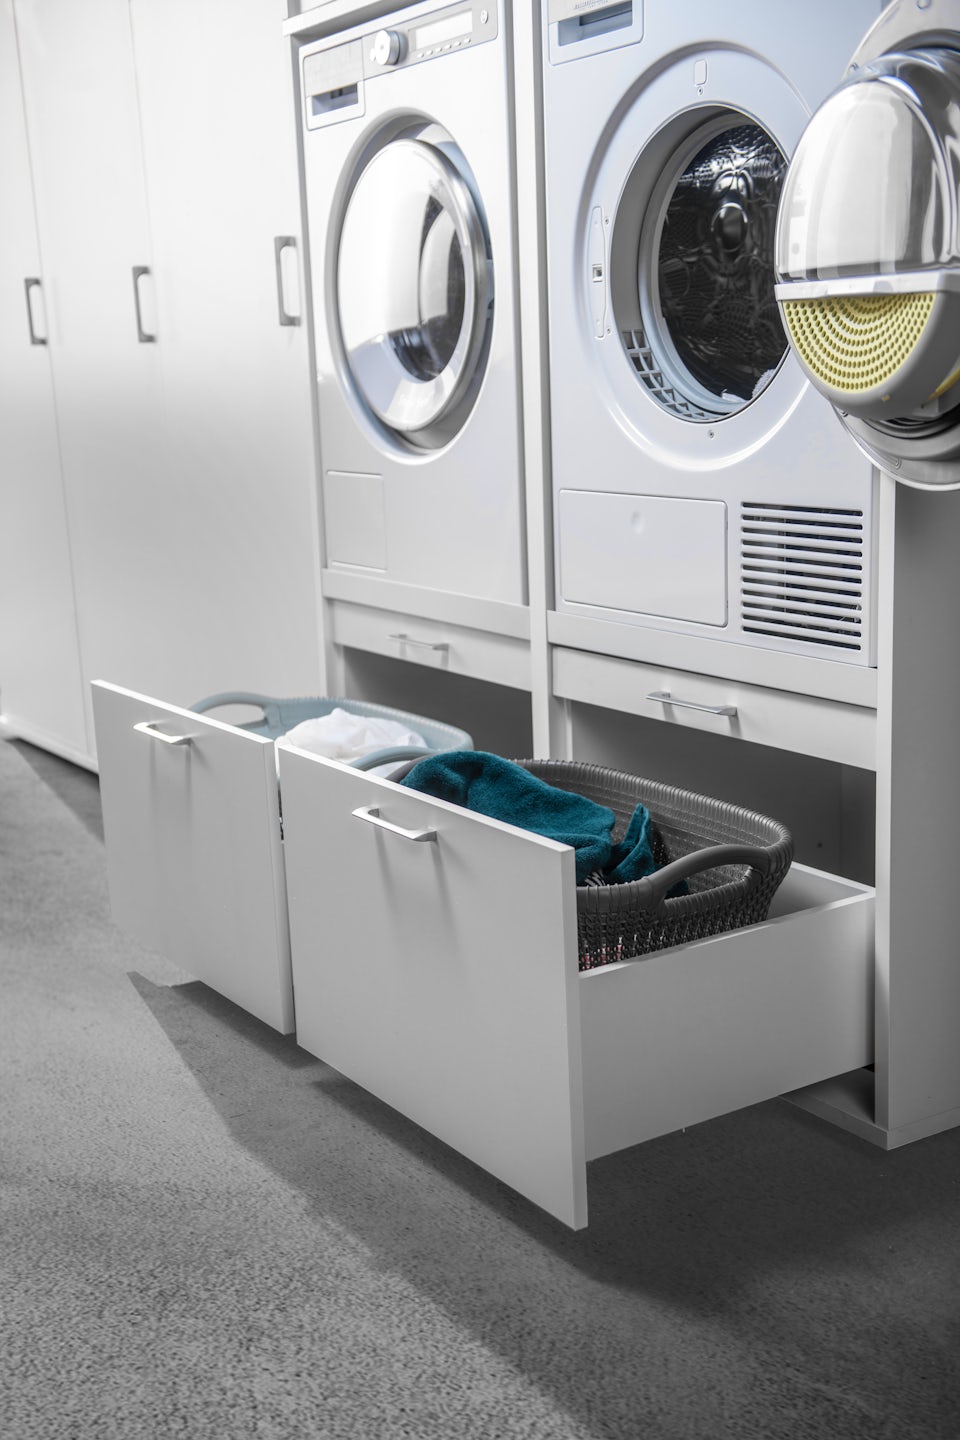 Dubbele wasmachine kast met droger en wasmachine naast elkaar met korflade voor wasmand en wasproducten en uittrekplateau in het wit in de wasruimte verhoger inspiratie ideeen